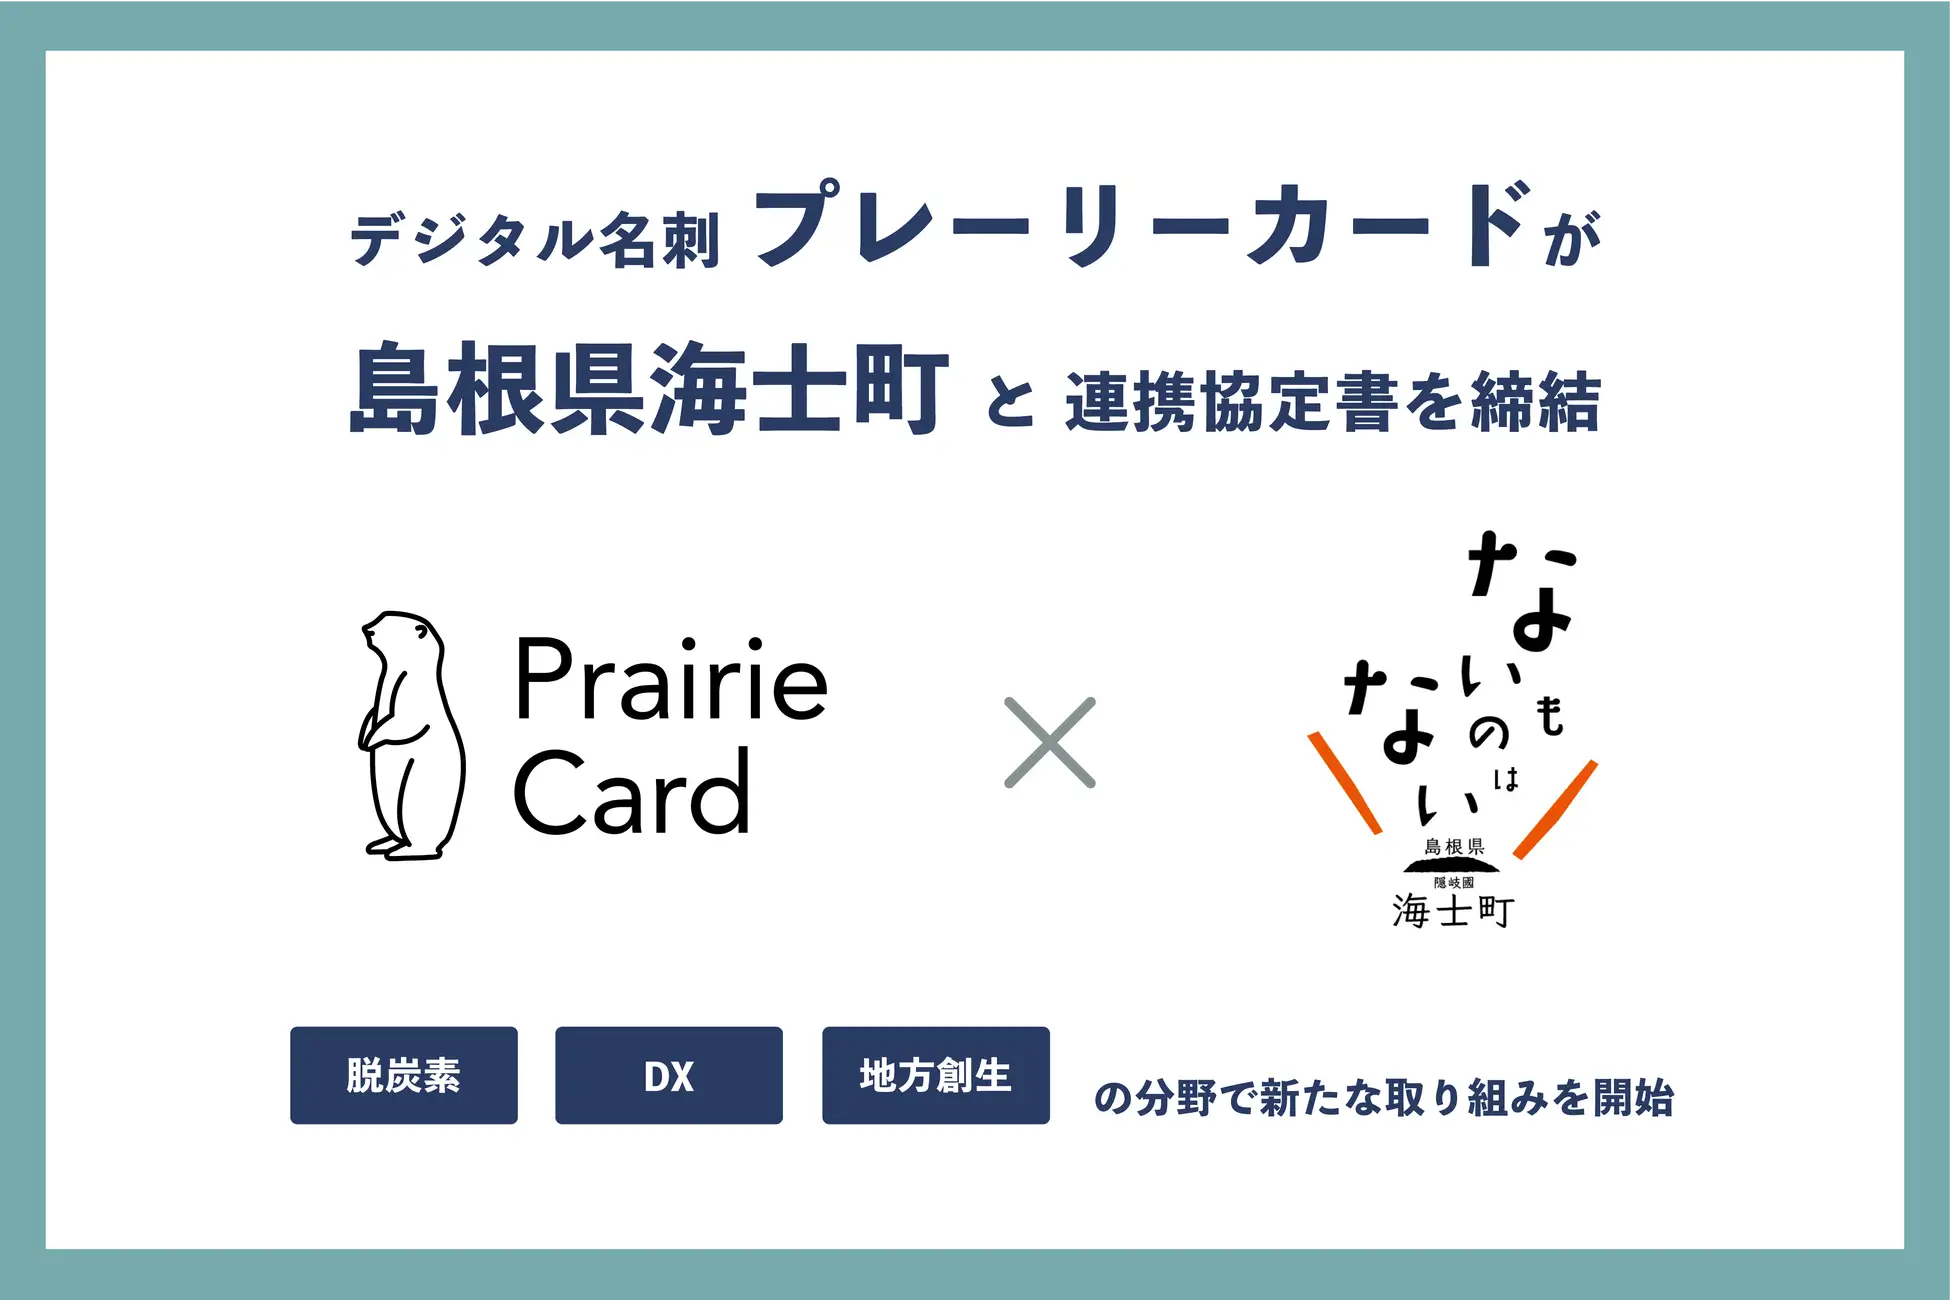 デジタル名刺「プレーリーカード」が、島根県海士町と連携協定書を締結。脱炭素・DX・地方創生の分野で新たな取り組みを開始